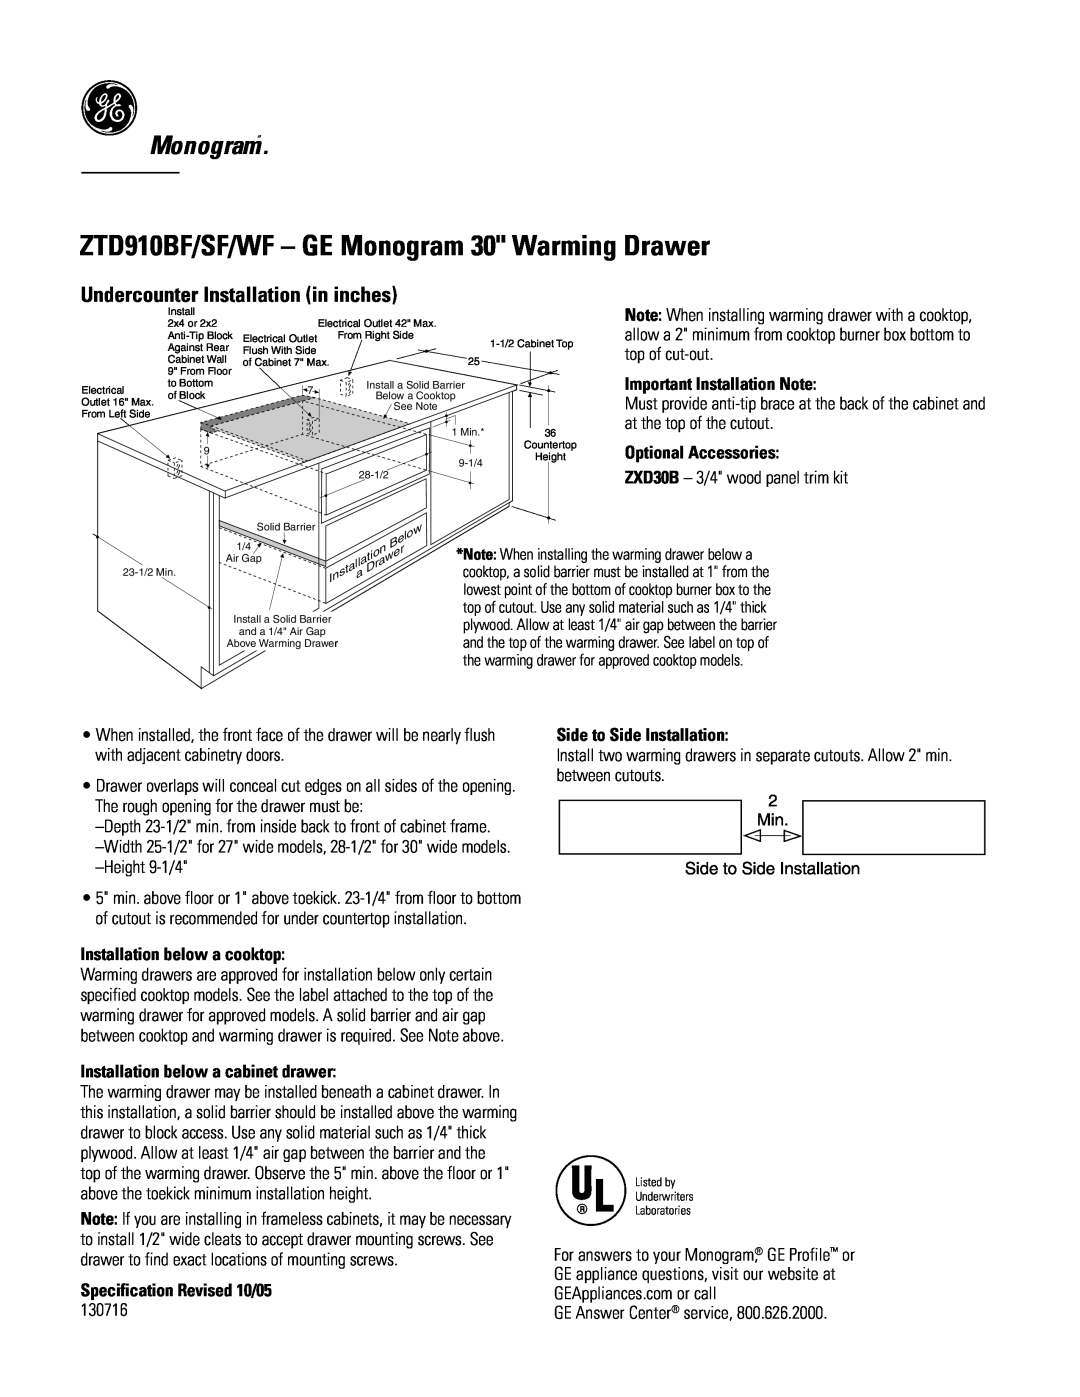 GE ZTD910BF/SF/WF - GE Monogram 30 Warming Drawer, Monogram“, Undercounter Installation in inches, Optional Accessories 